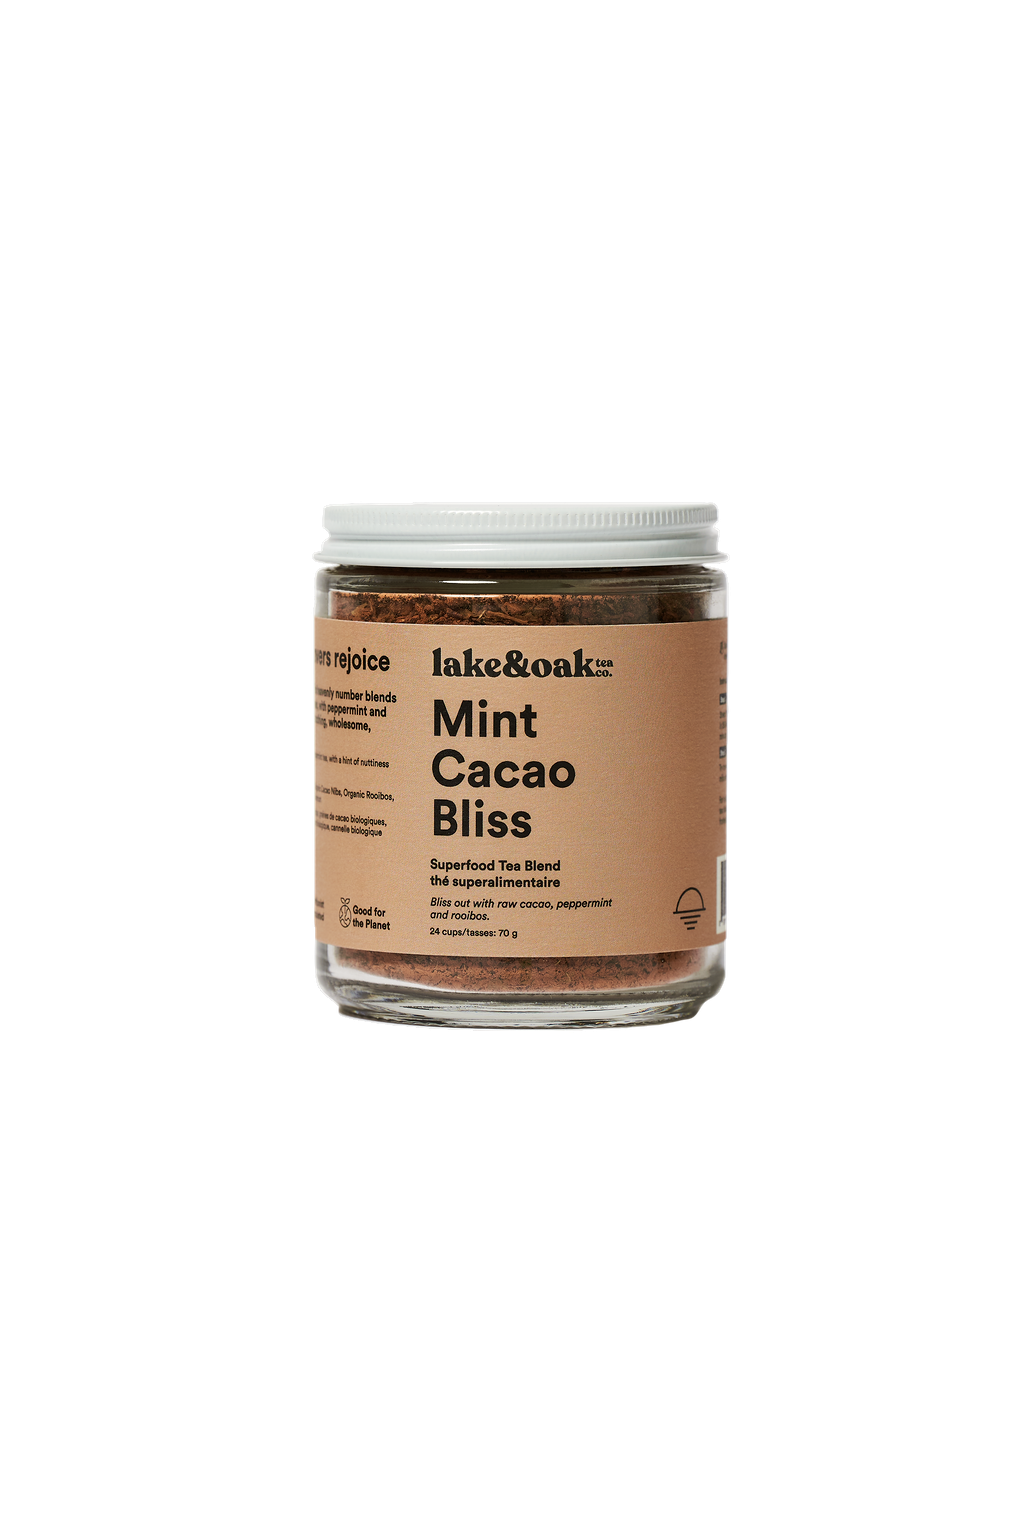 Superfood Tea - Mint Cocao Bliss Lake&Oak